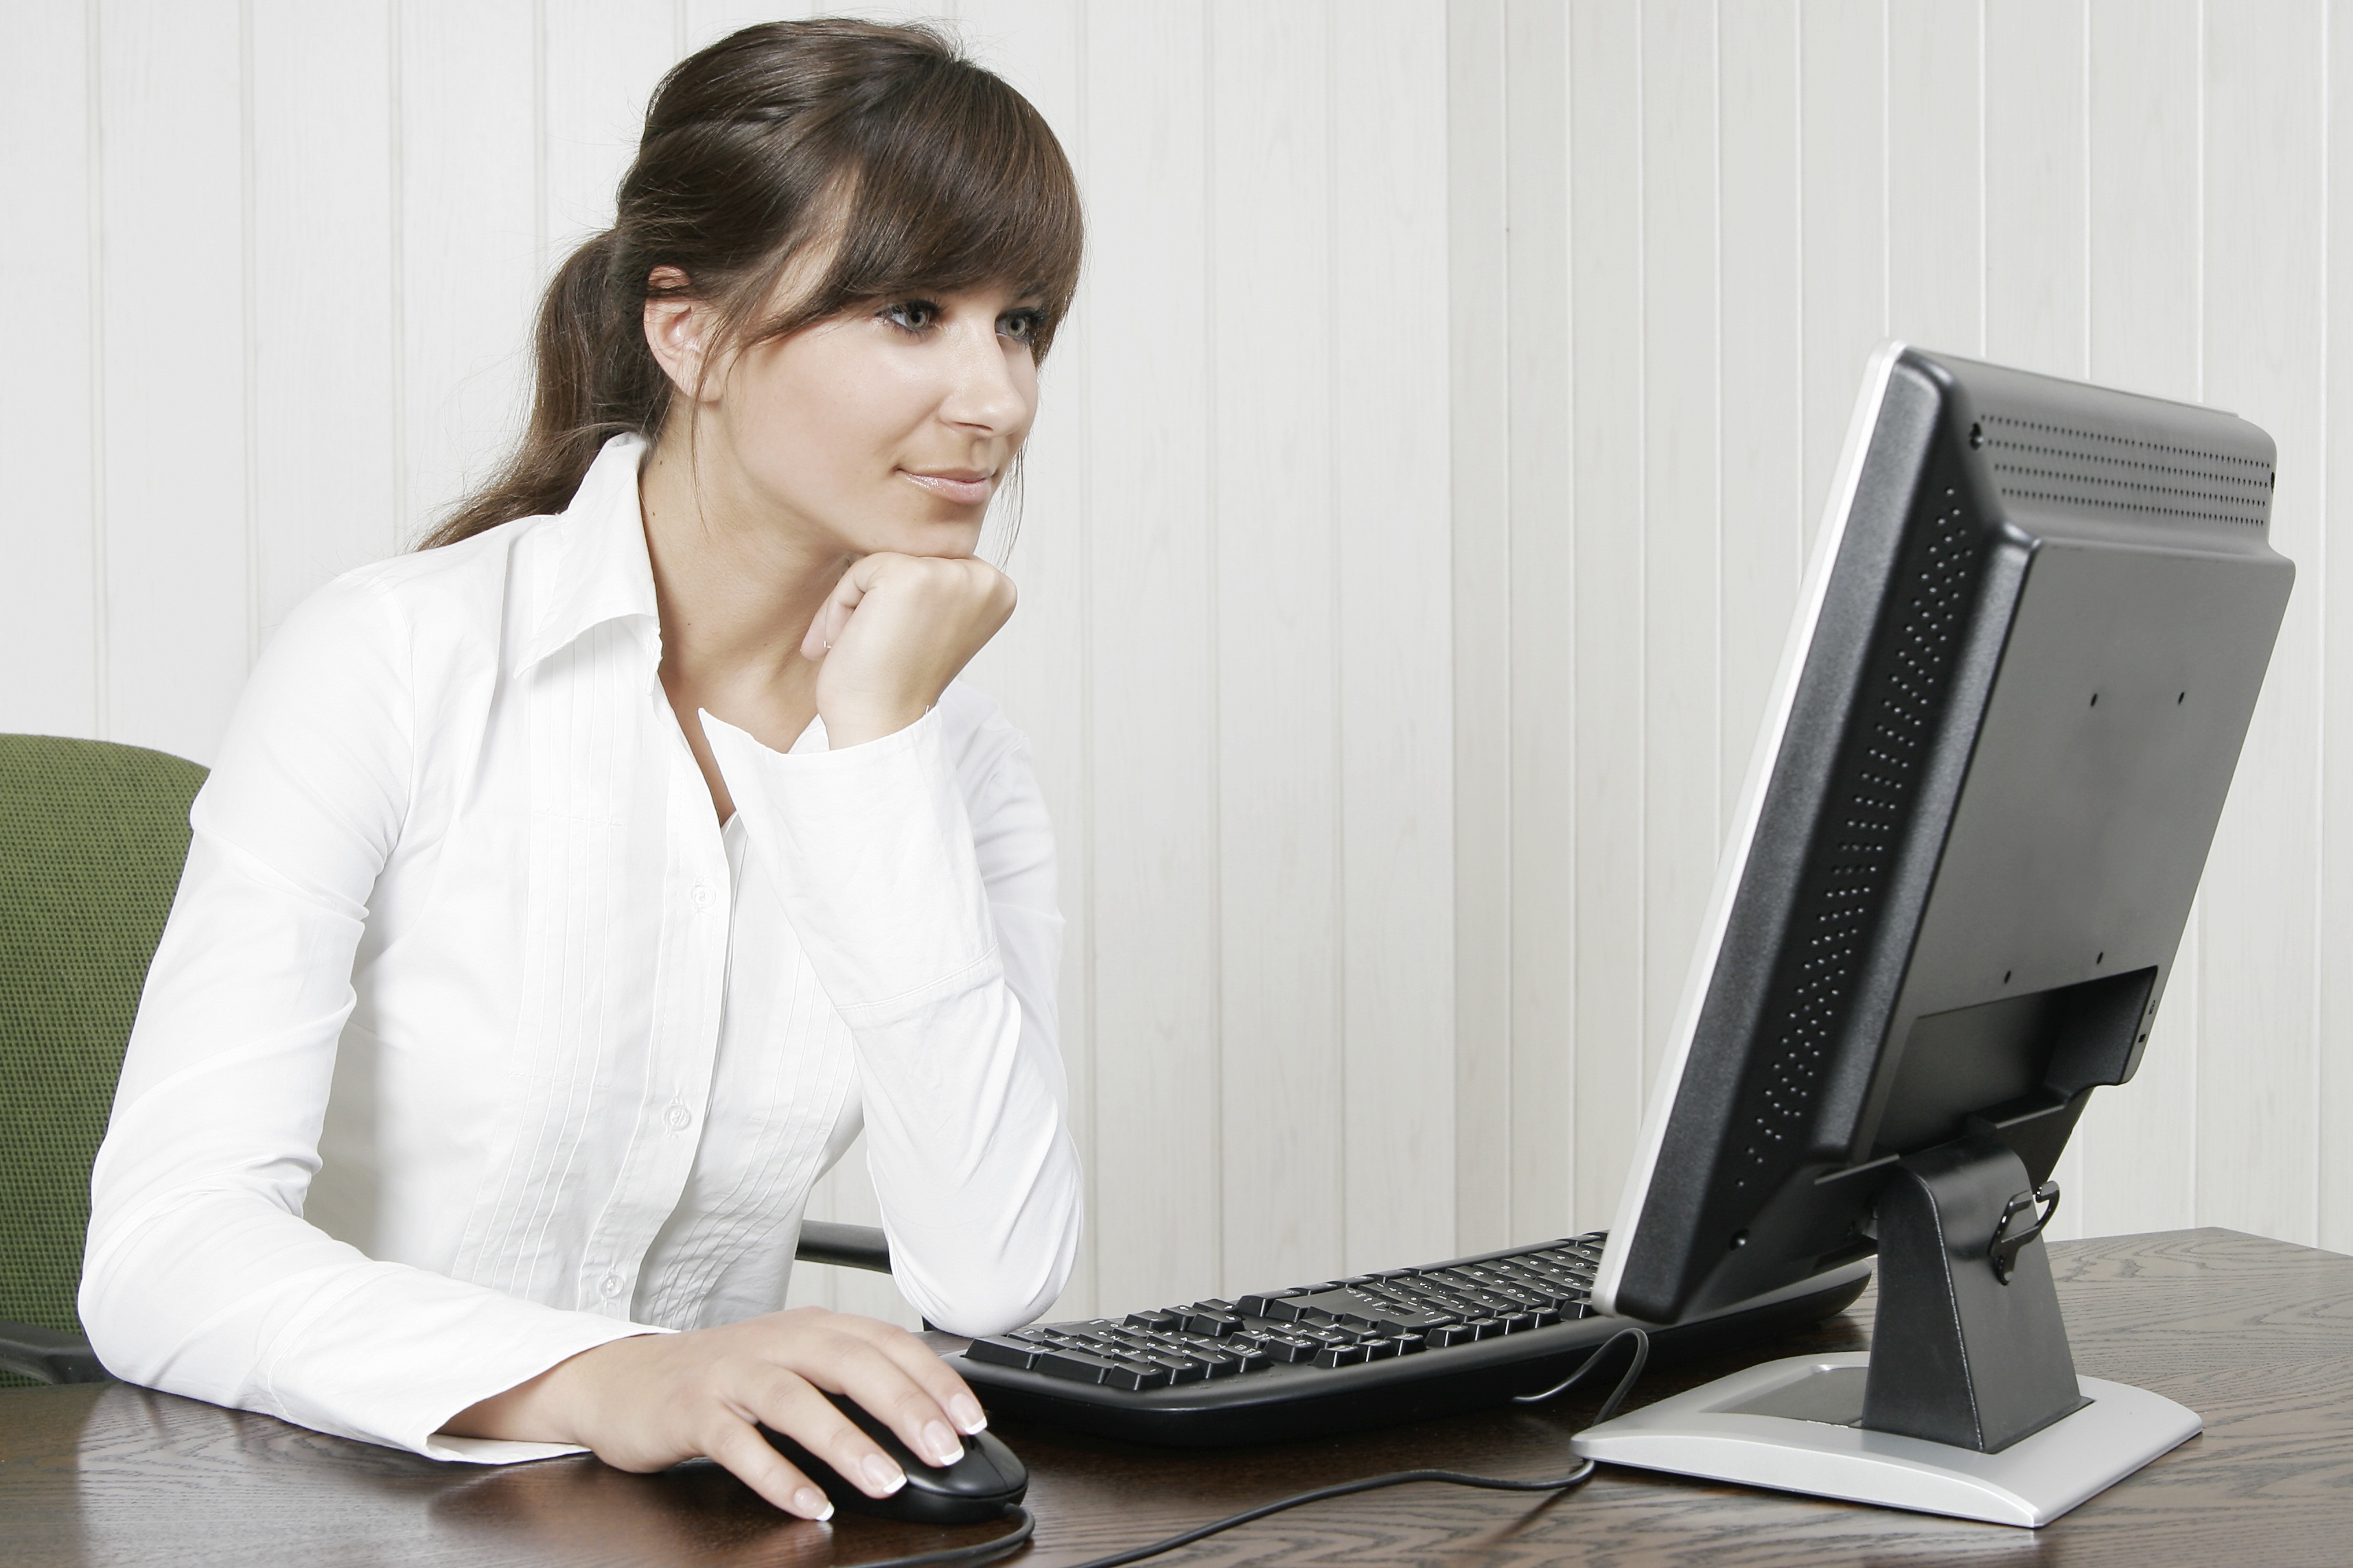 Бывшая на сайте сидит. Женщина сидит за компьютером. Девушка сидит за компьютером. Компьютер в офисе. Женщина с компьютером.